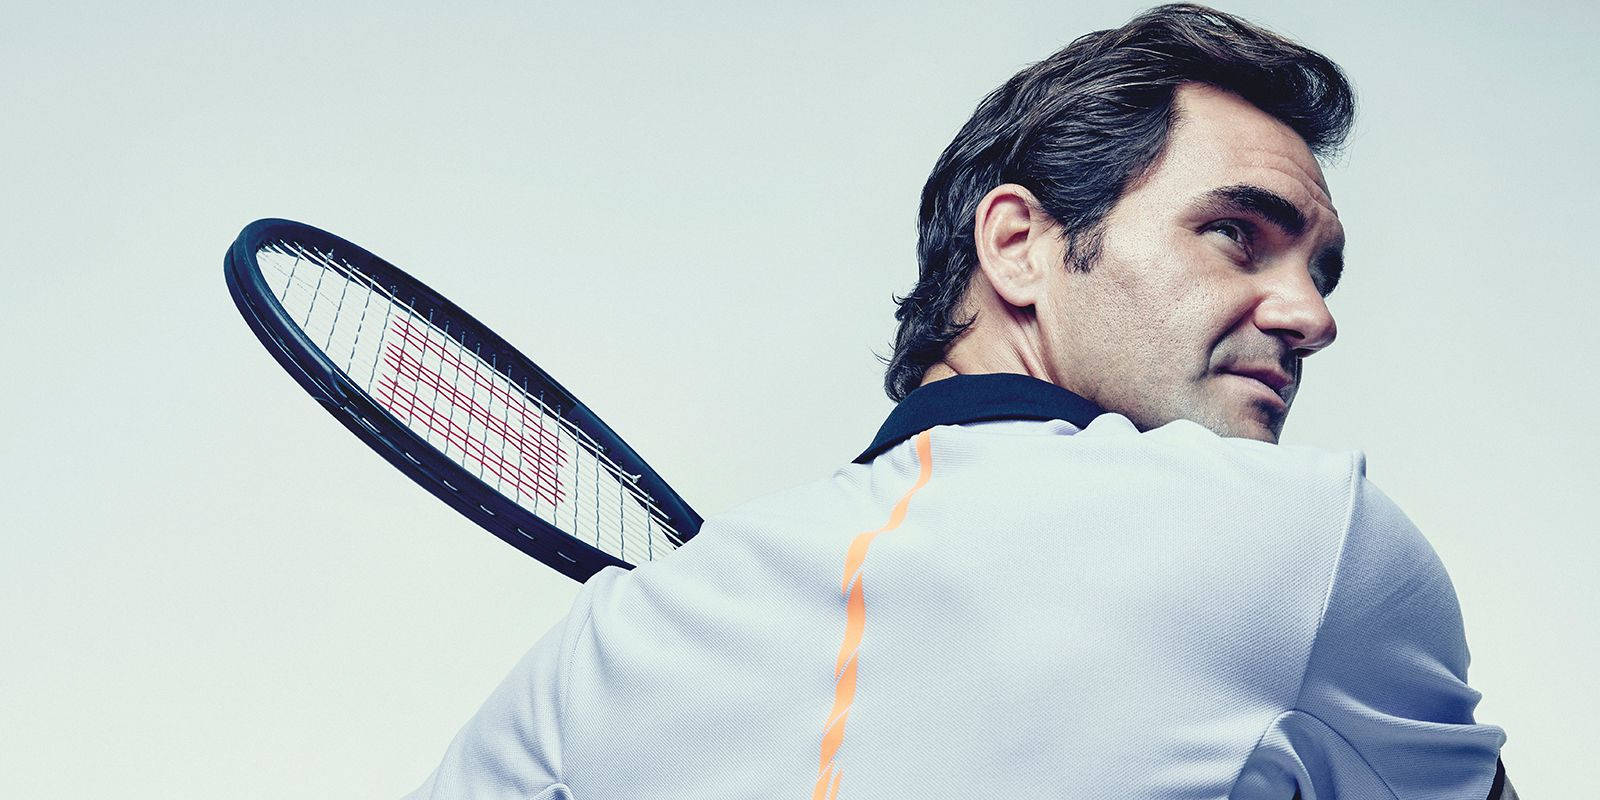 Roger Federer Tennis Master